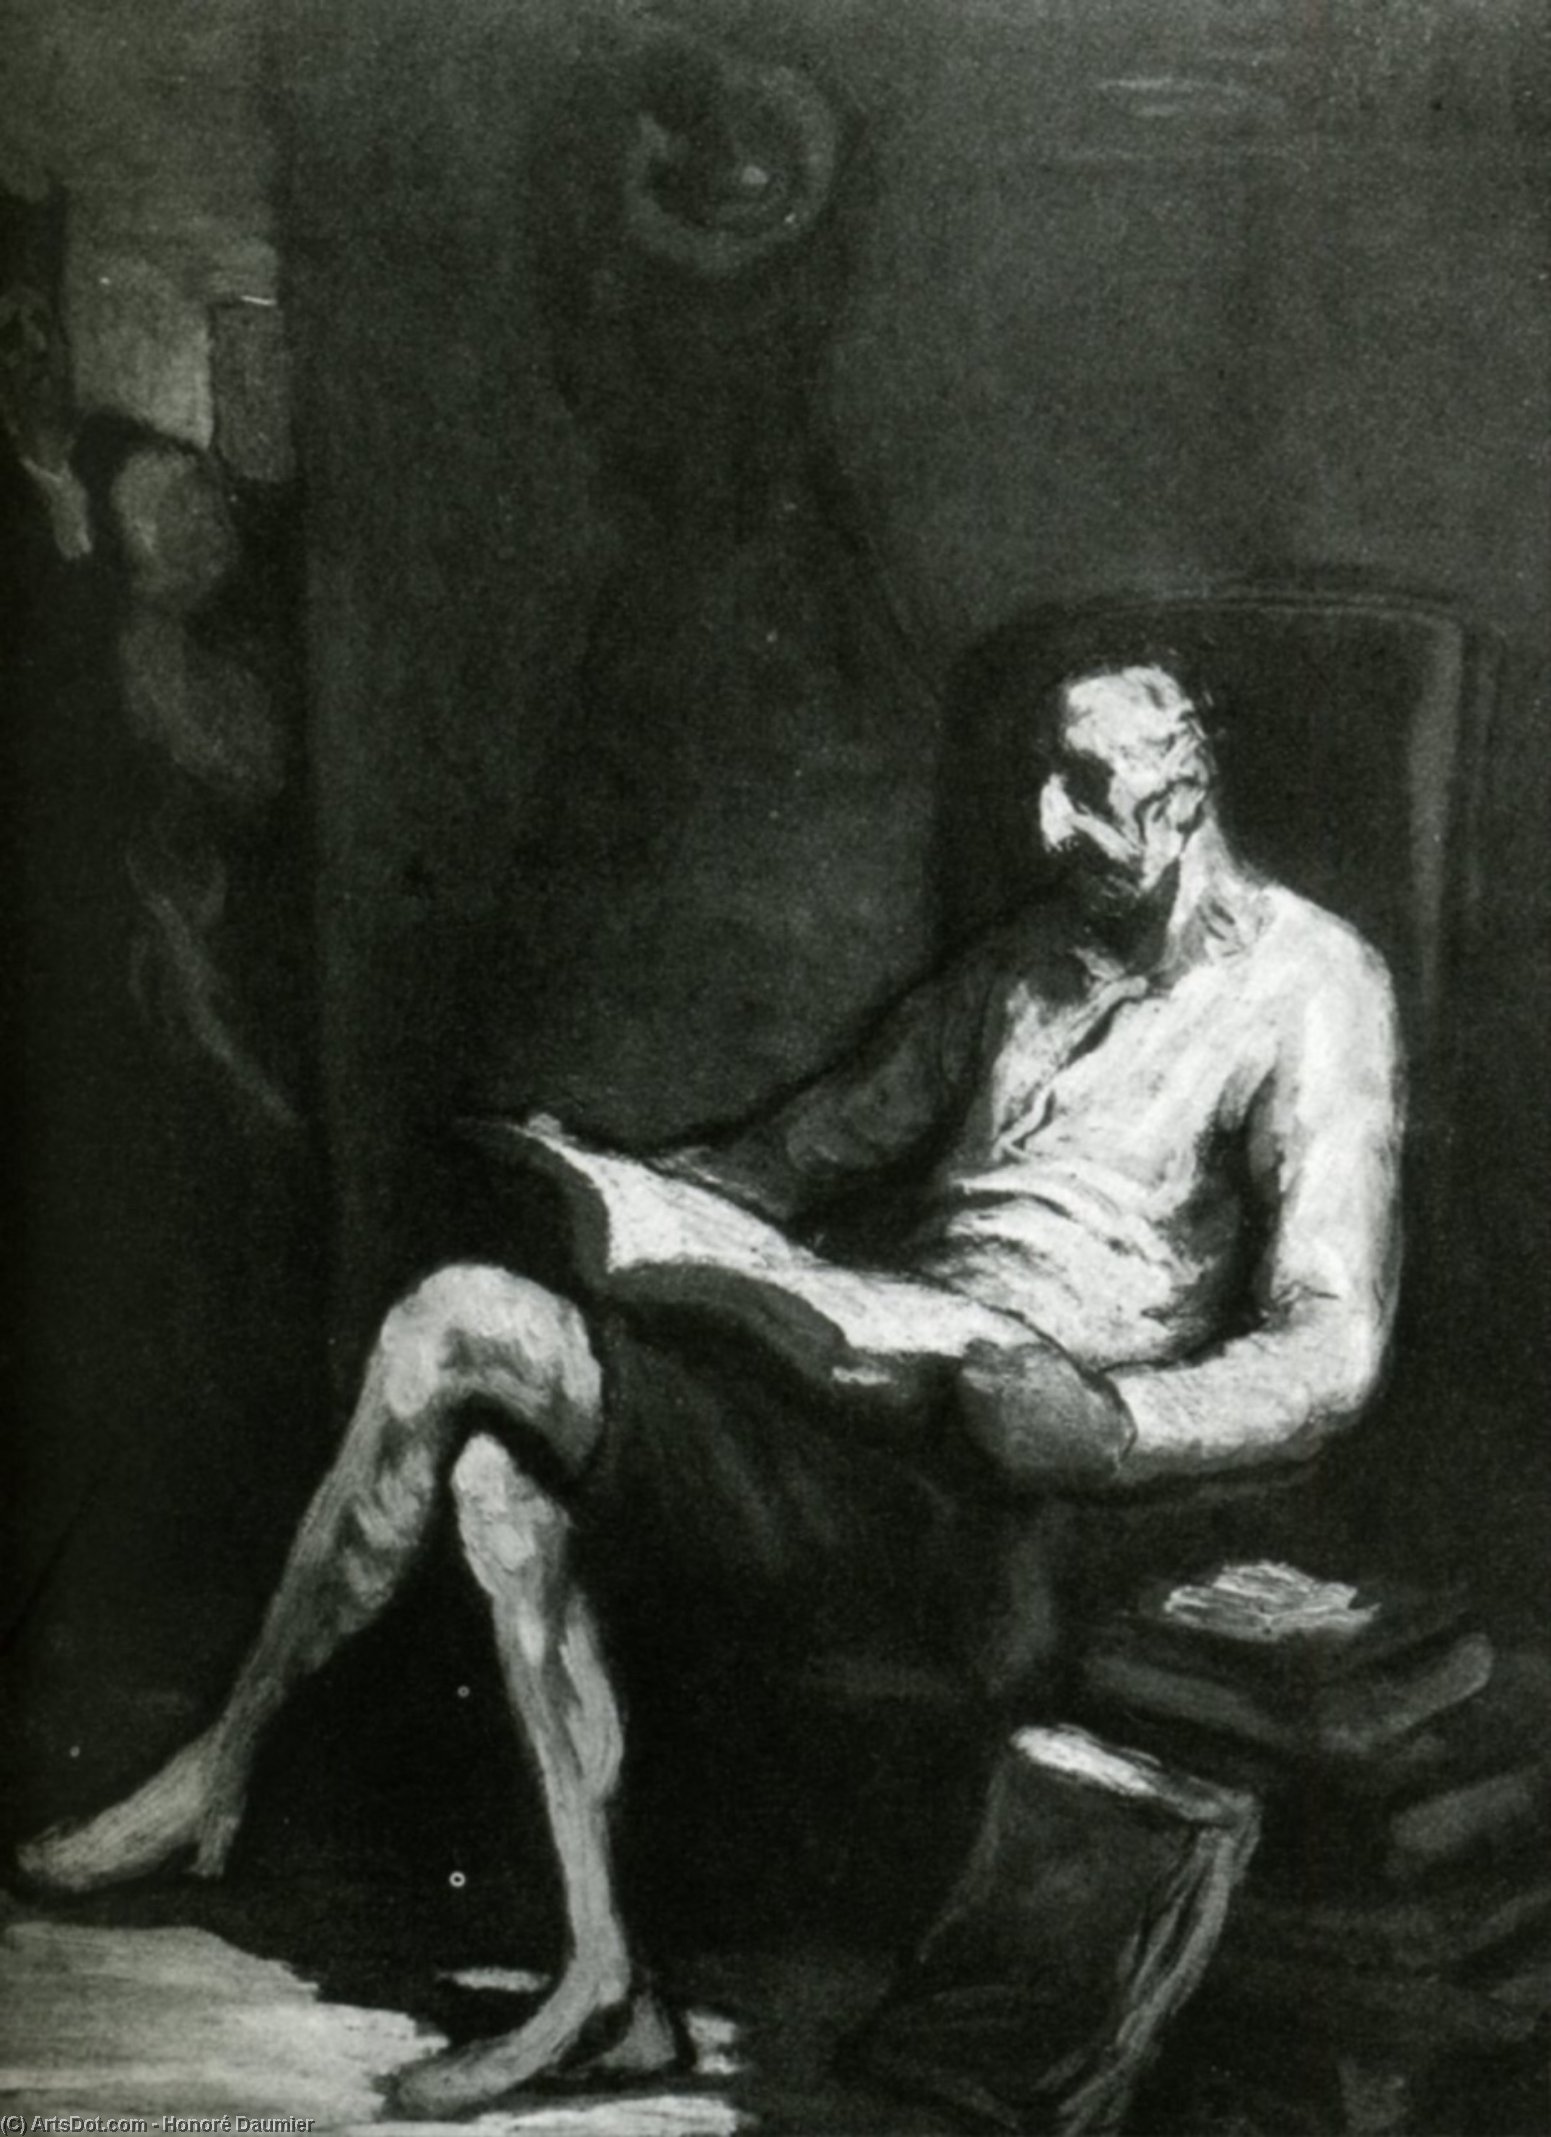 WikiOO.org - Encyclopedia of Fine Arts - Maleri, Artwork Honoré Daumier - Don Quichotte lisant, huile sur panneau Gift Quichotte reading, oil on panel